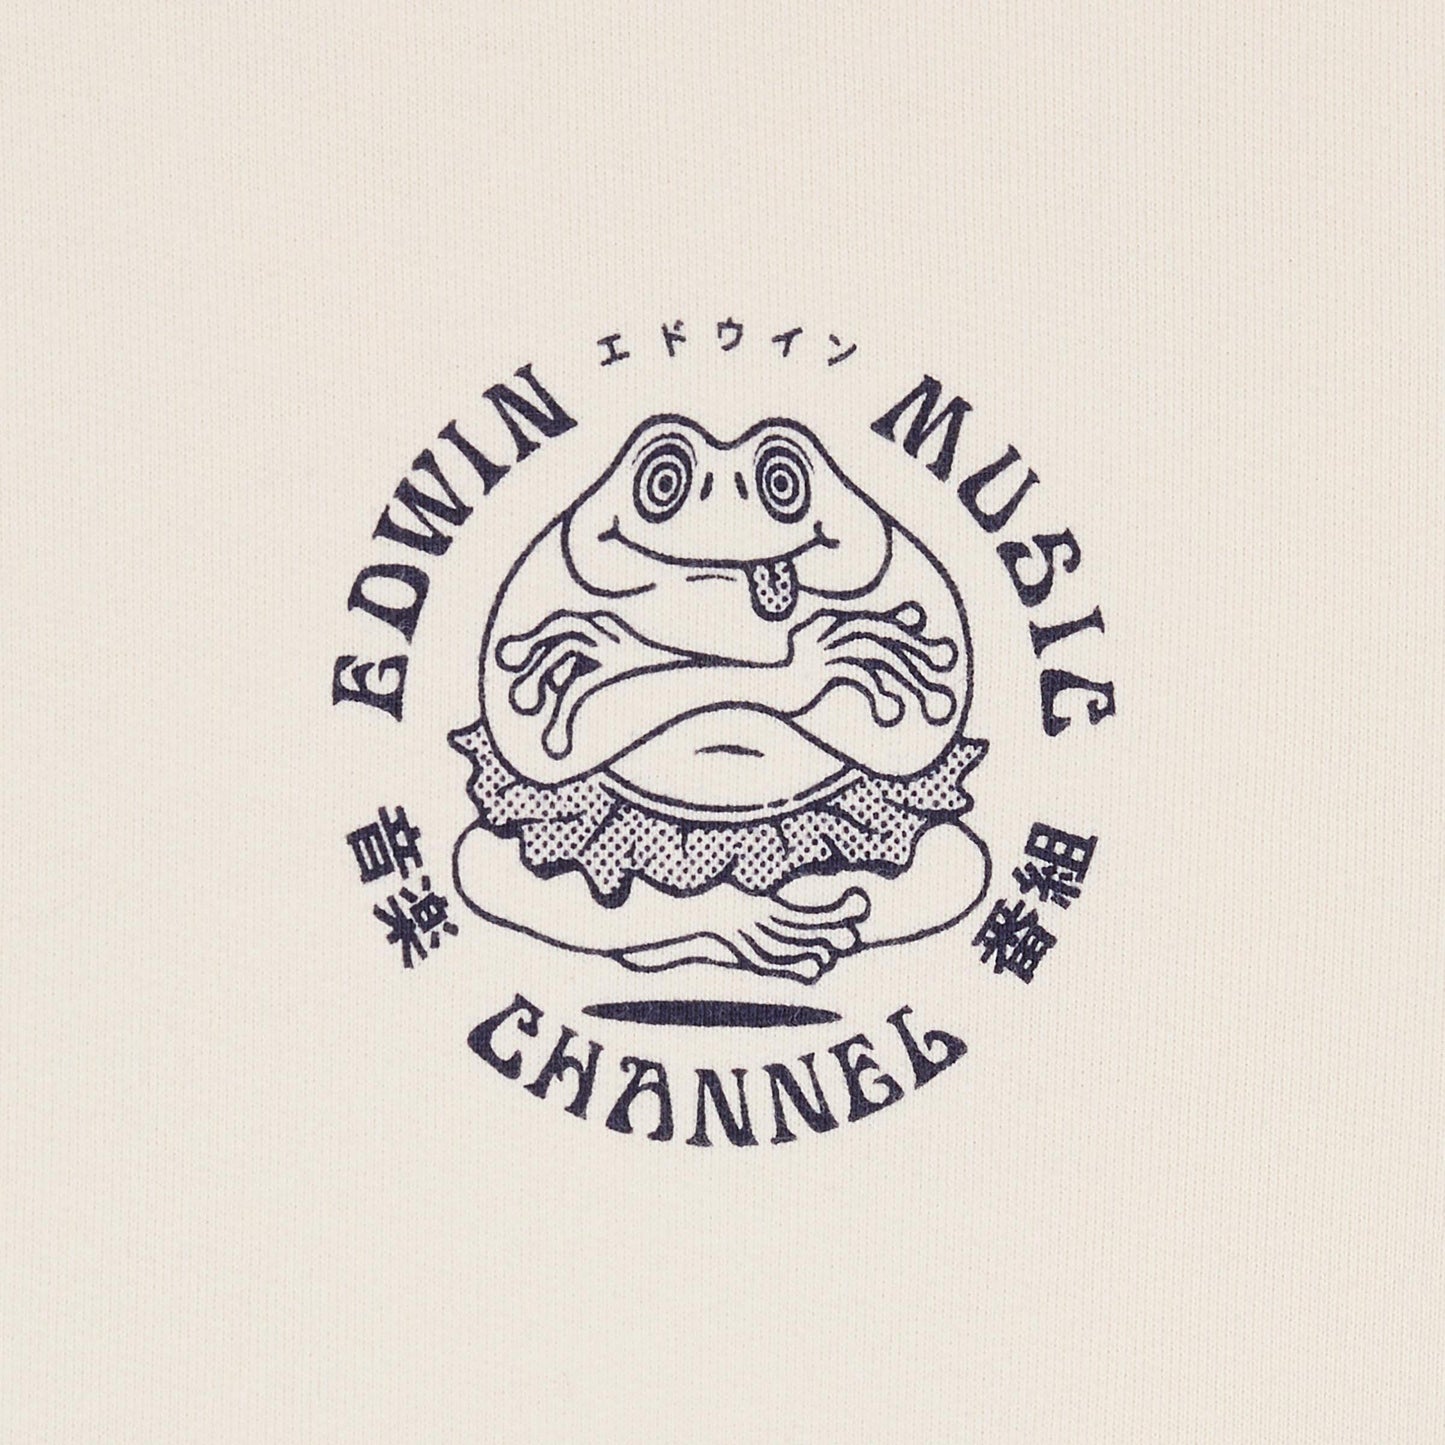 Edwin Music Channel Hoodie